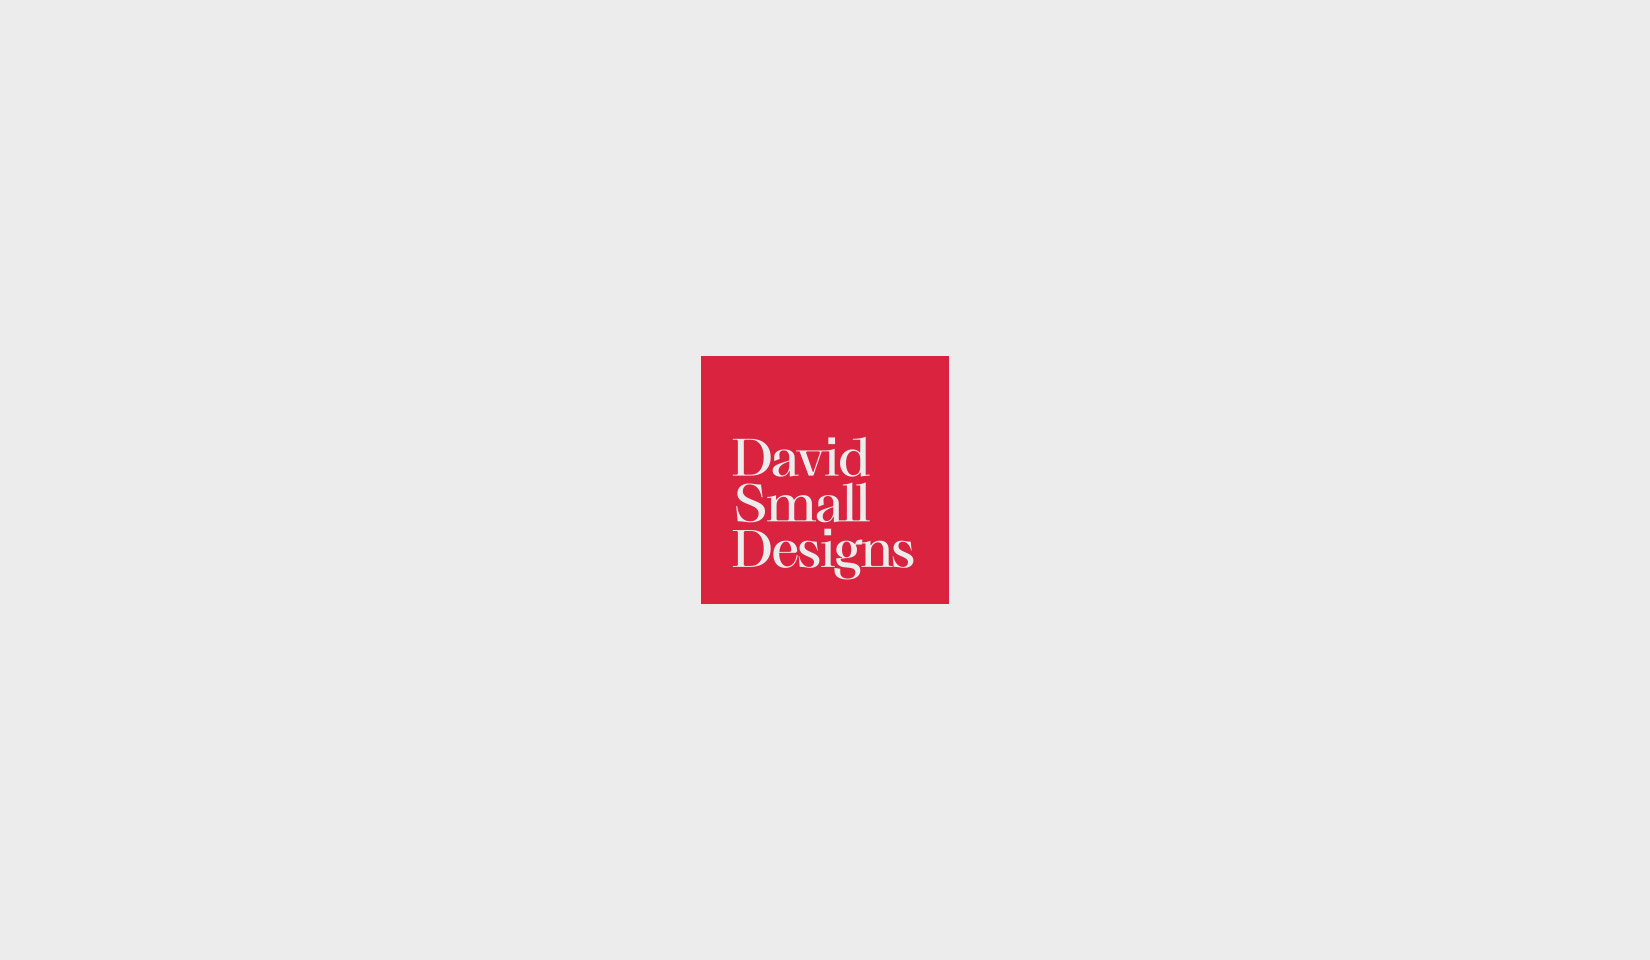 David Small Design Case Study